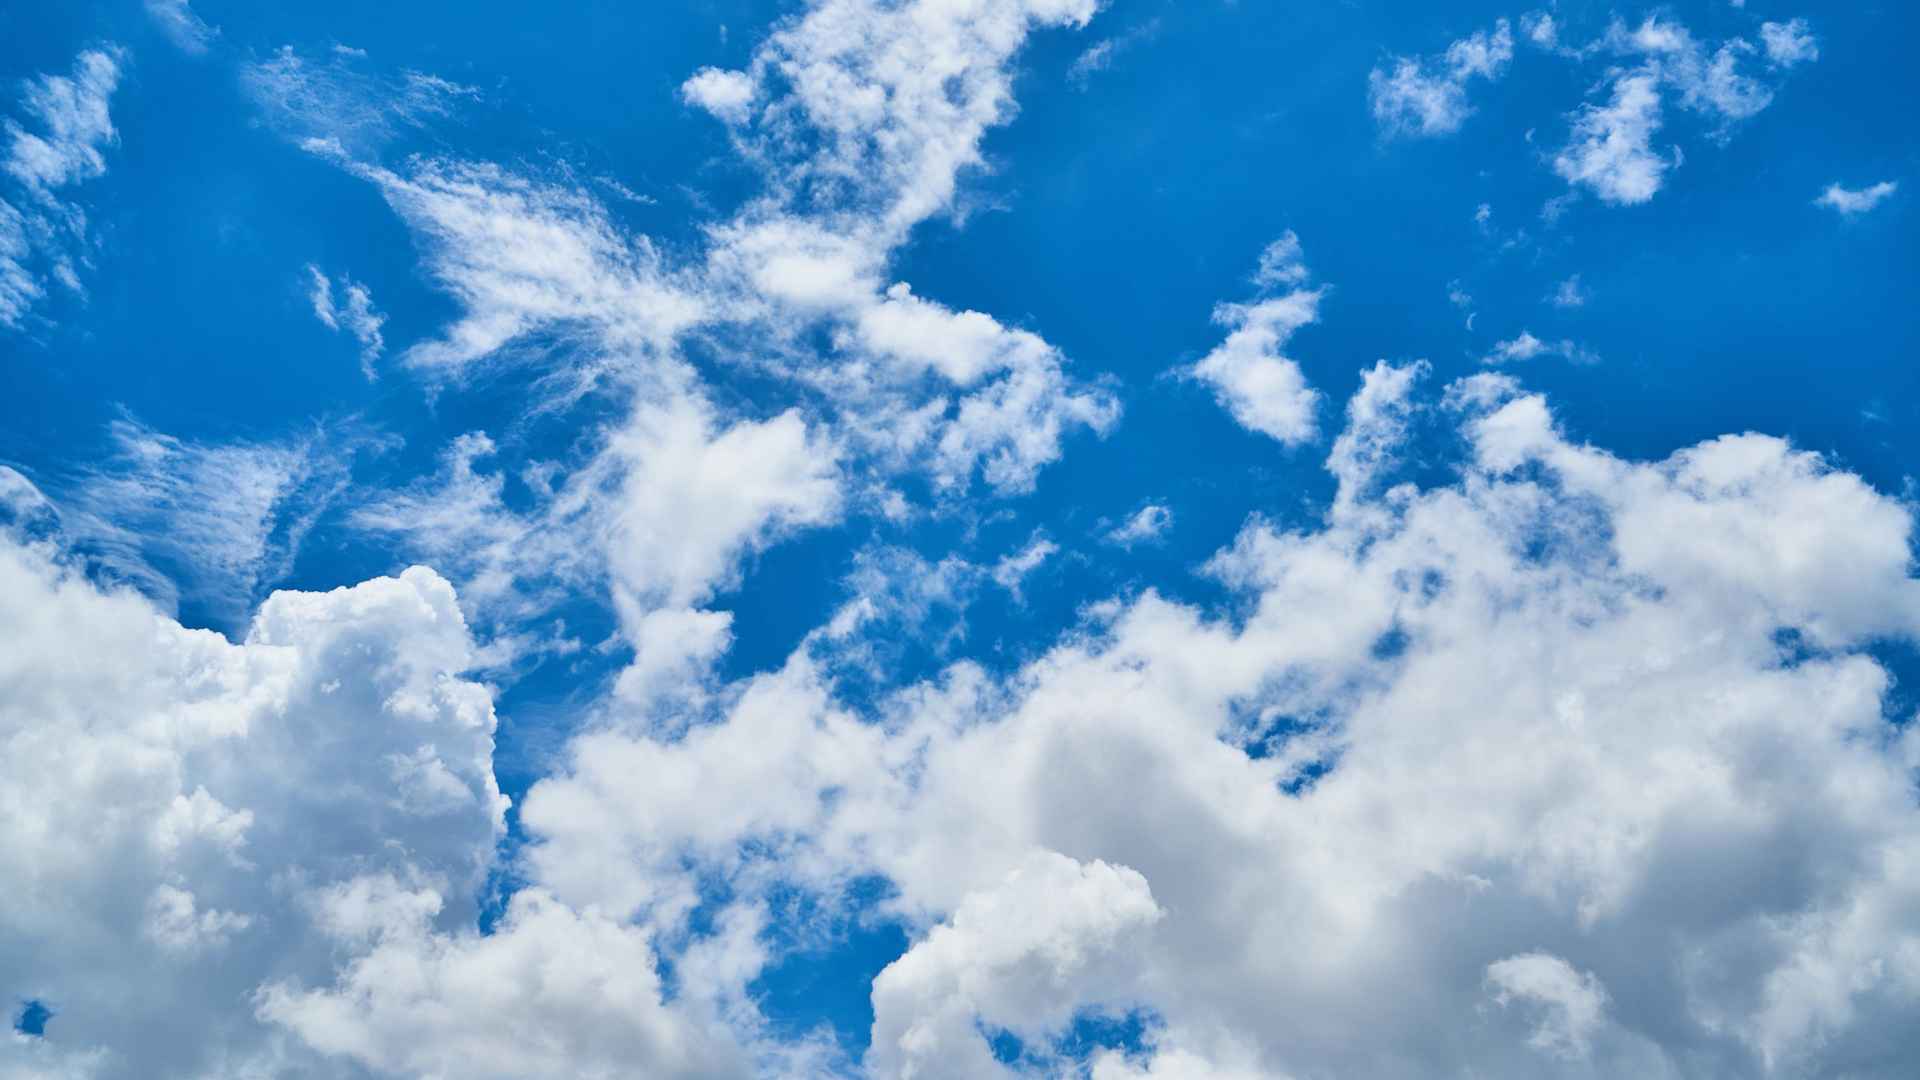 蓝天白云精美图片